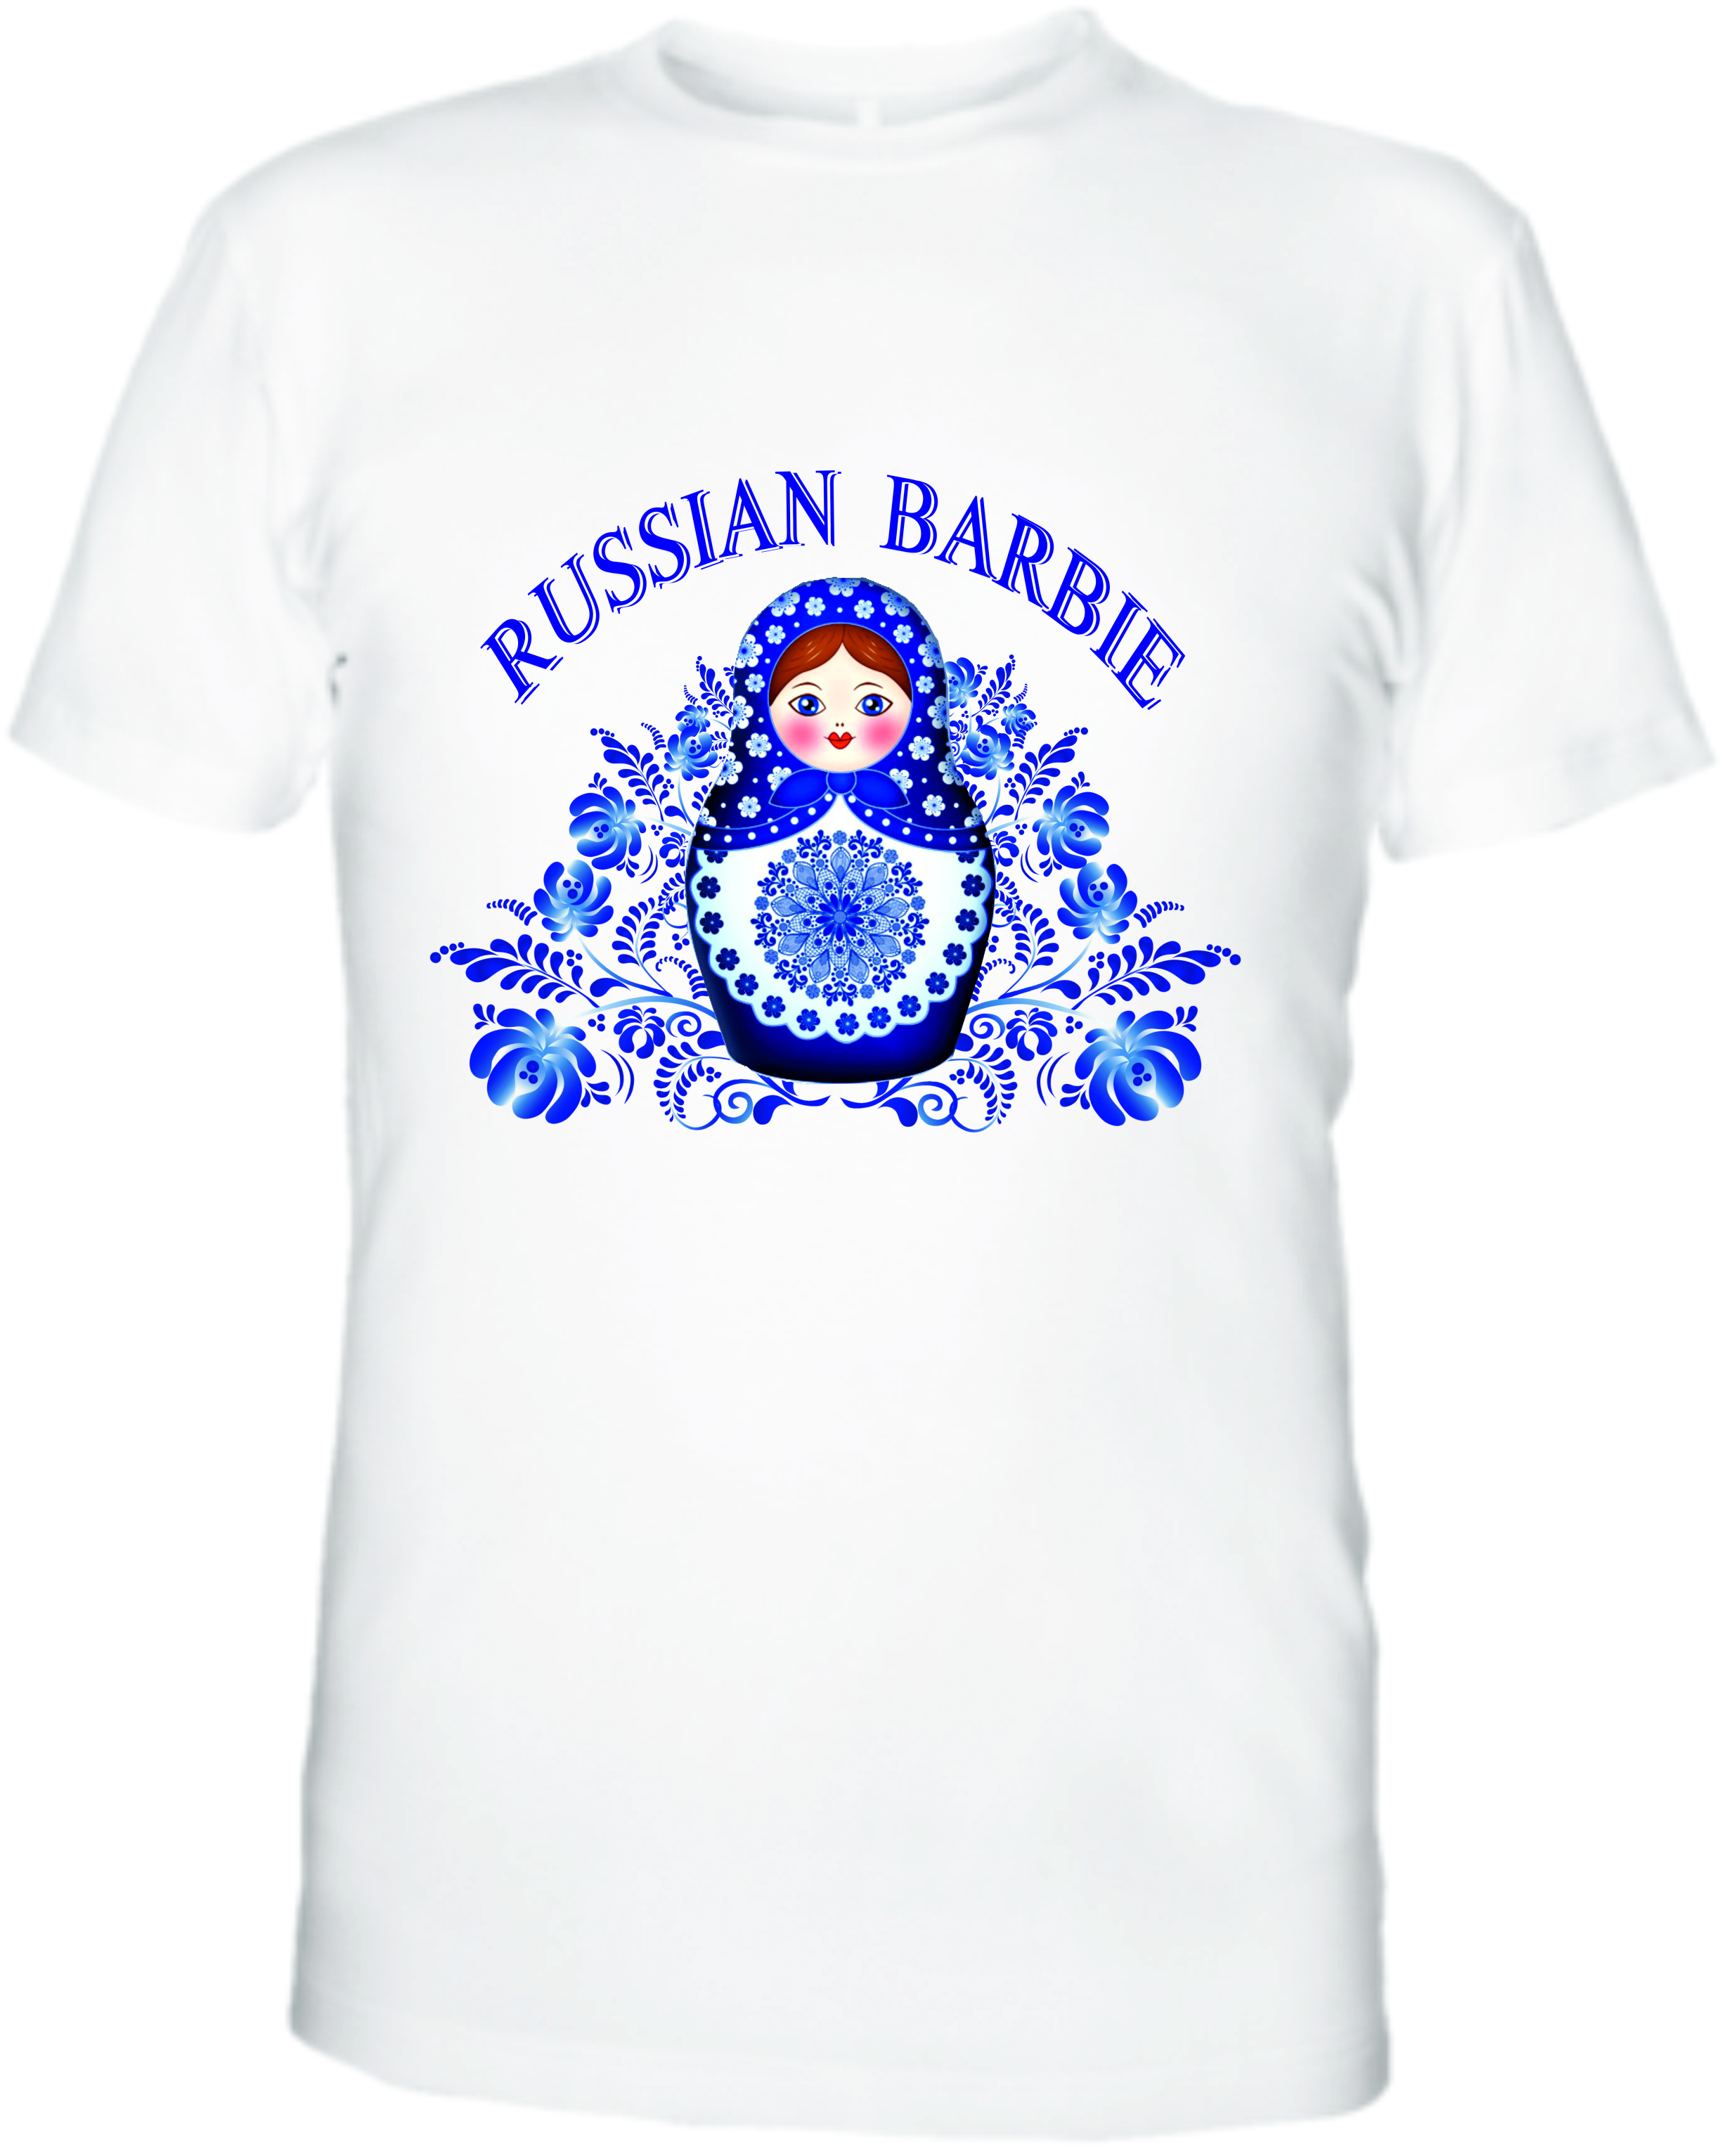 Футболки в Красноярске: купить прикольные футболки с надписями, заказать